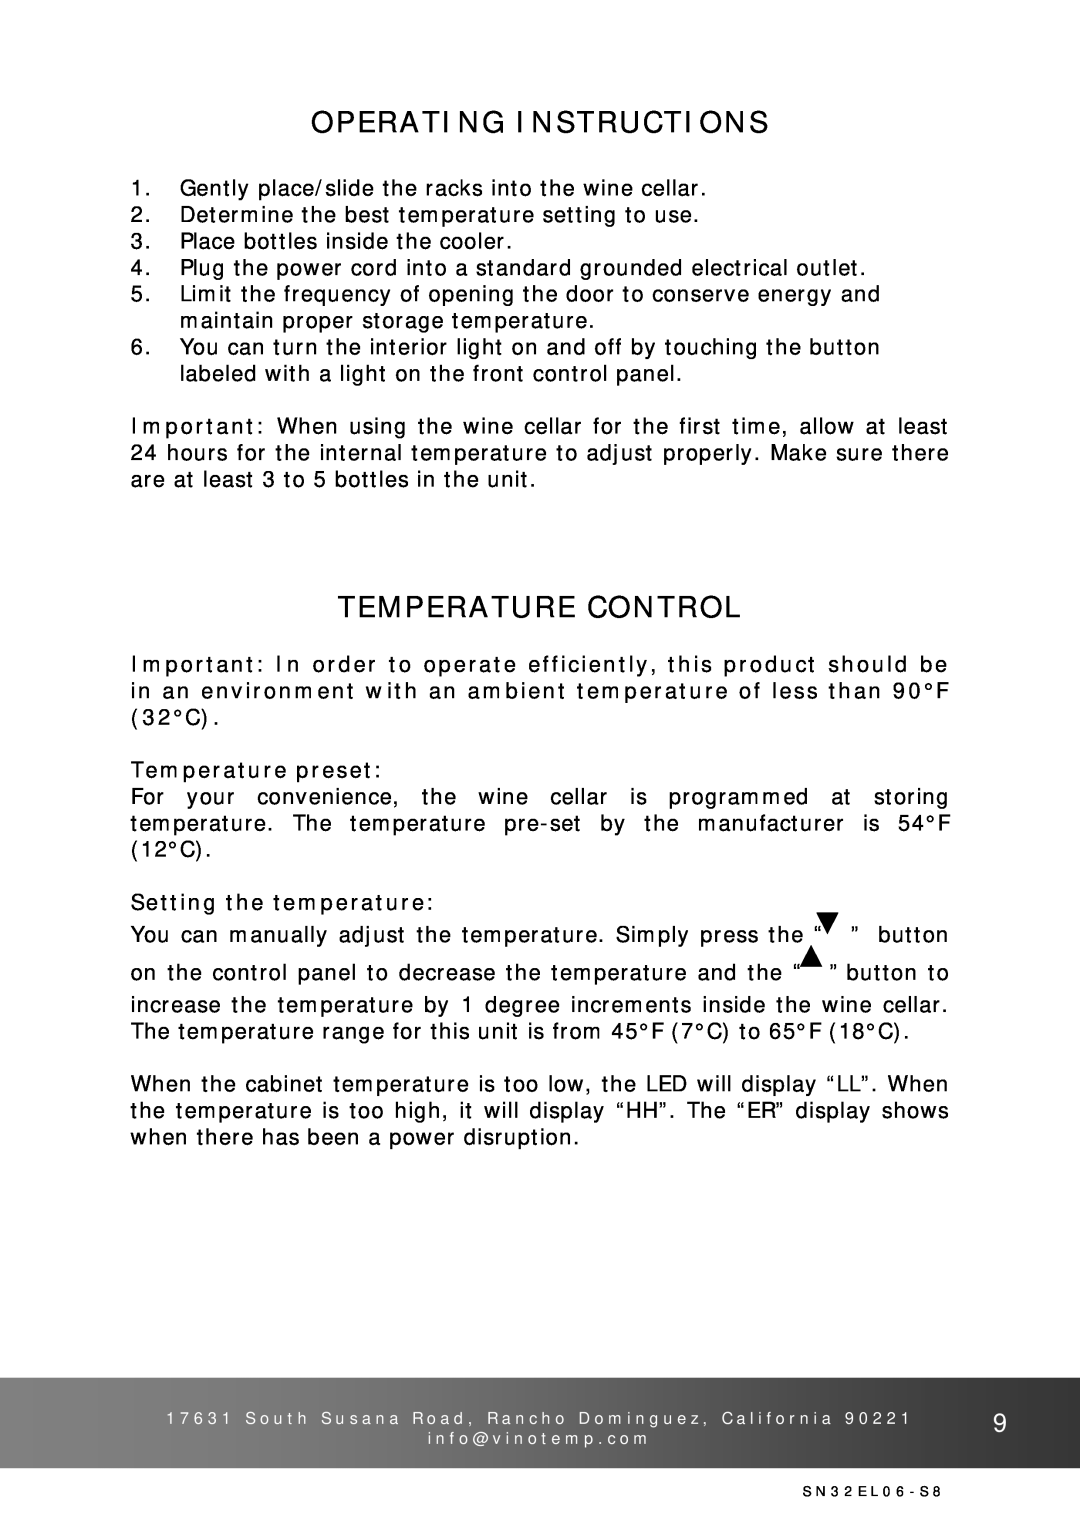 Vinotemp VT-32SN, VT-32G Operating Instructions, Temperature Control, Temperature preset, Setting the temperature 